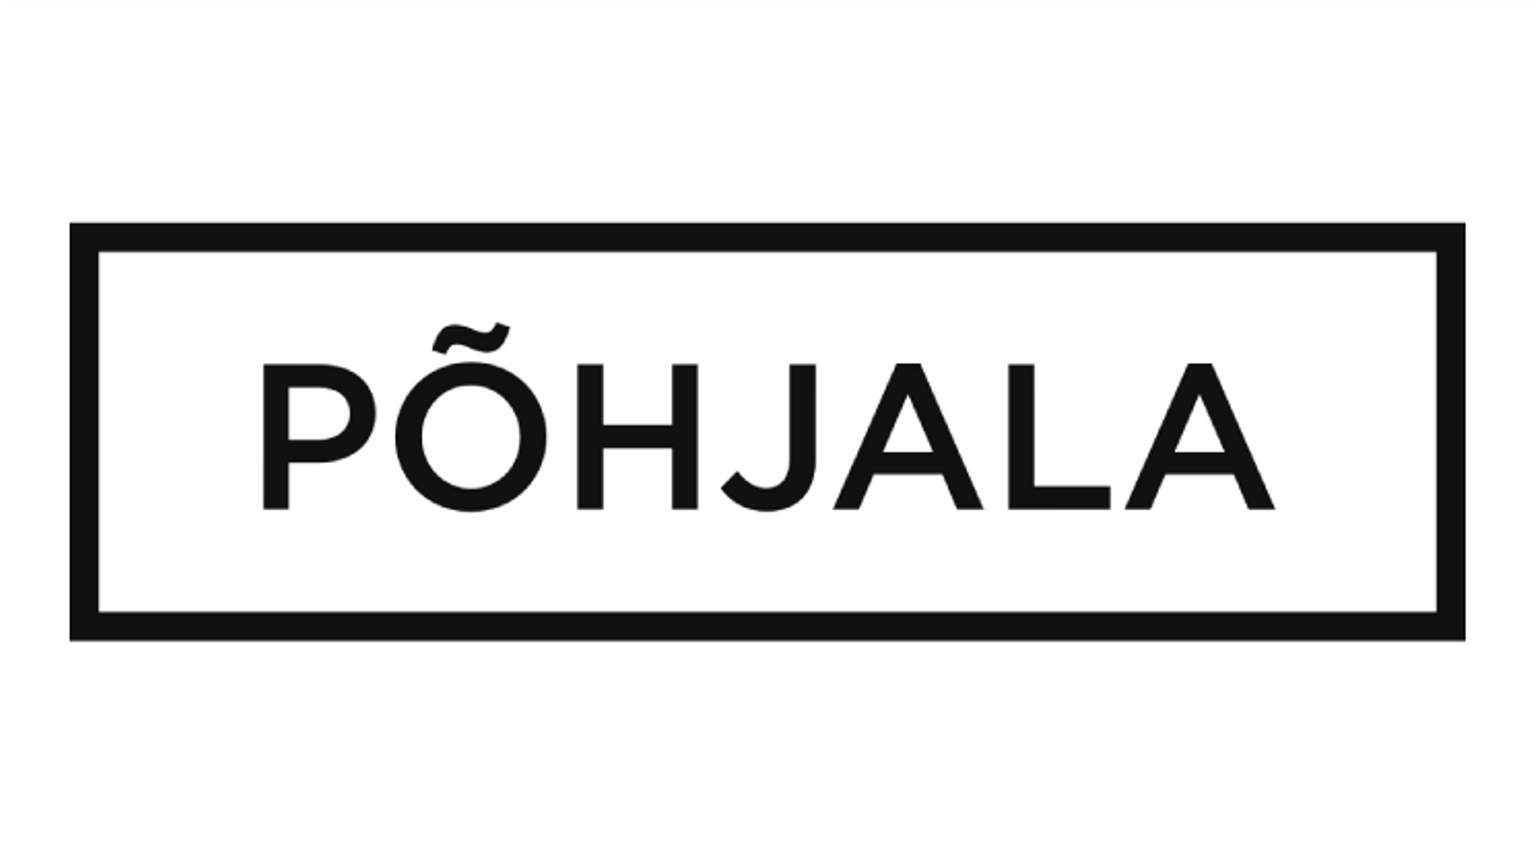 thumbnail for blog article named: Pohjala, la puissance d'une brasserie estonienne